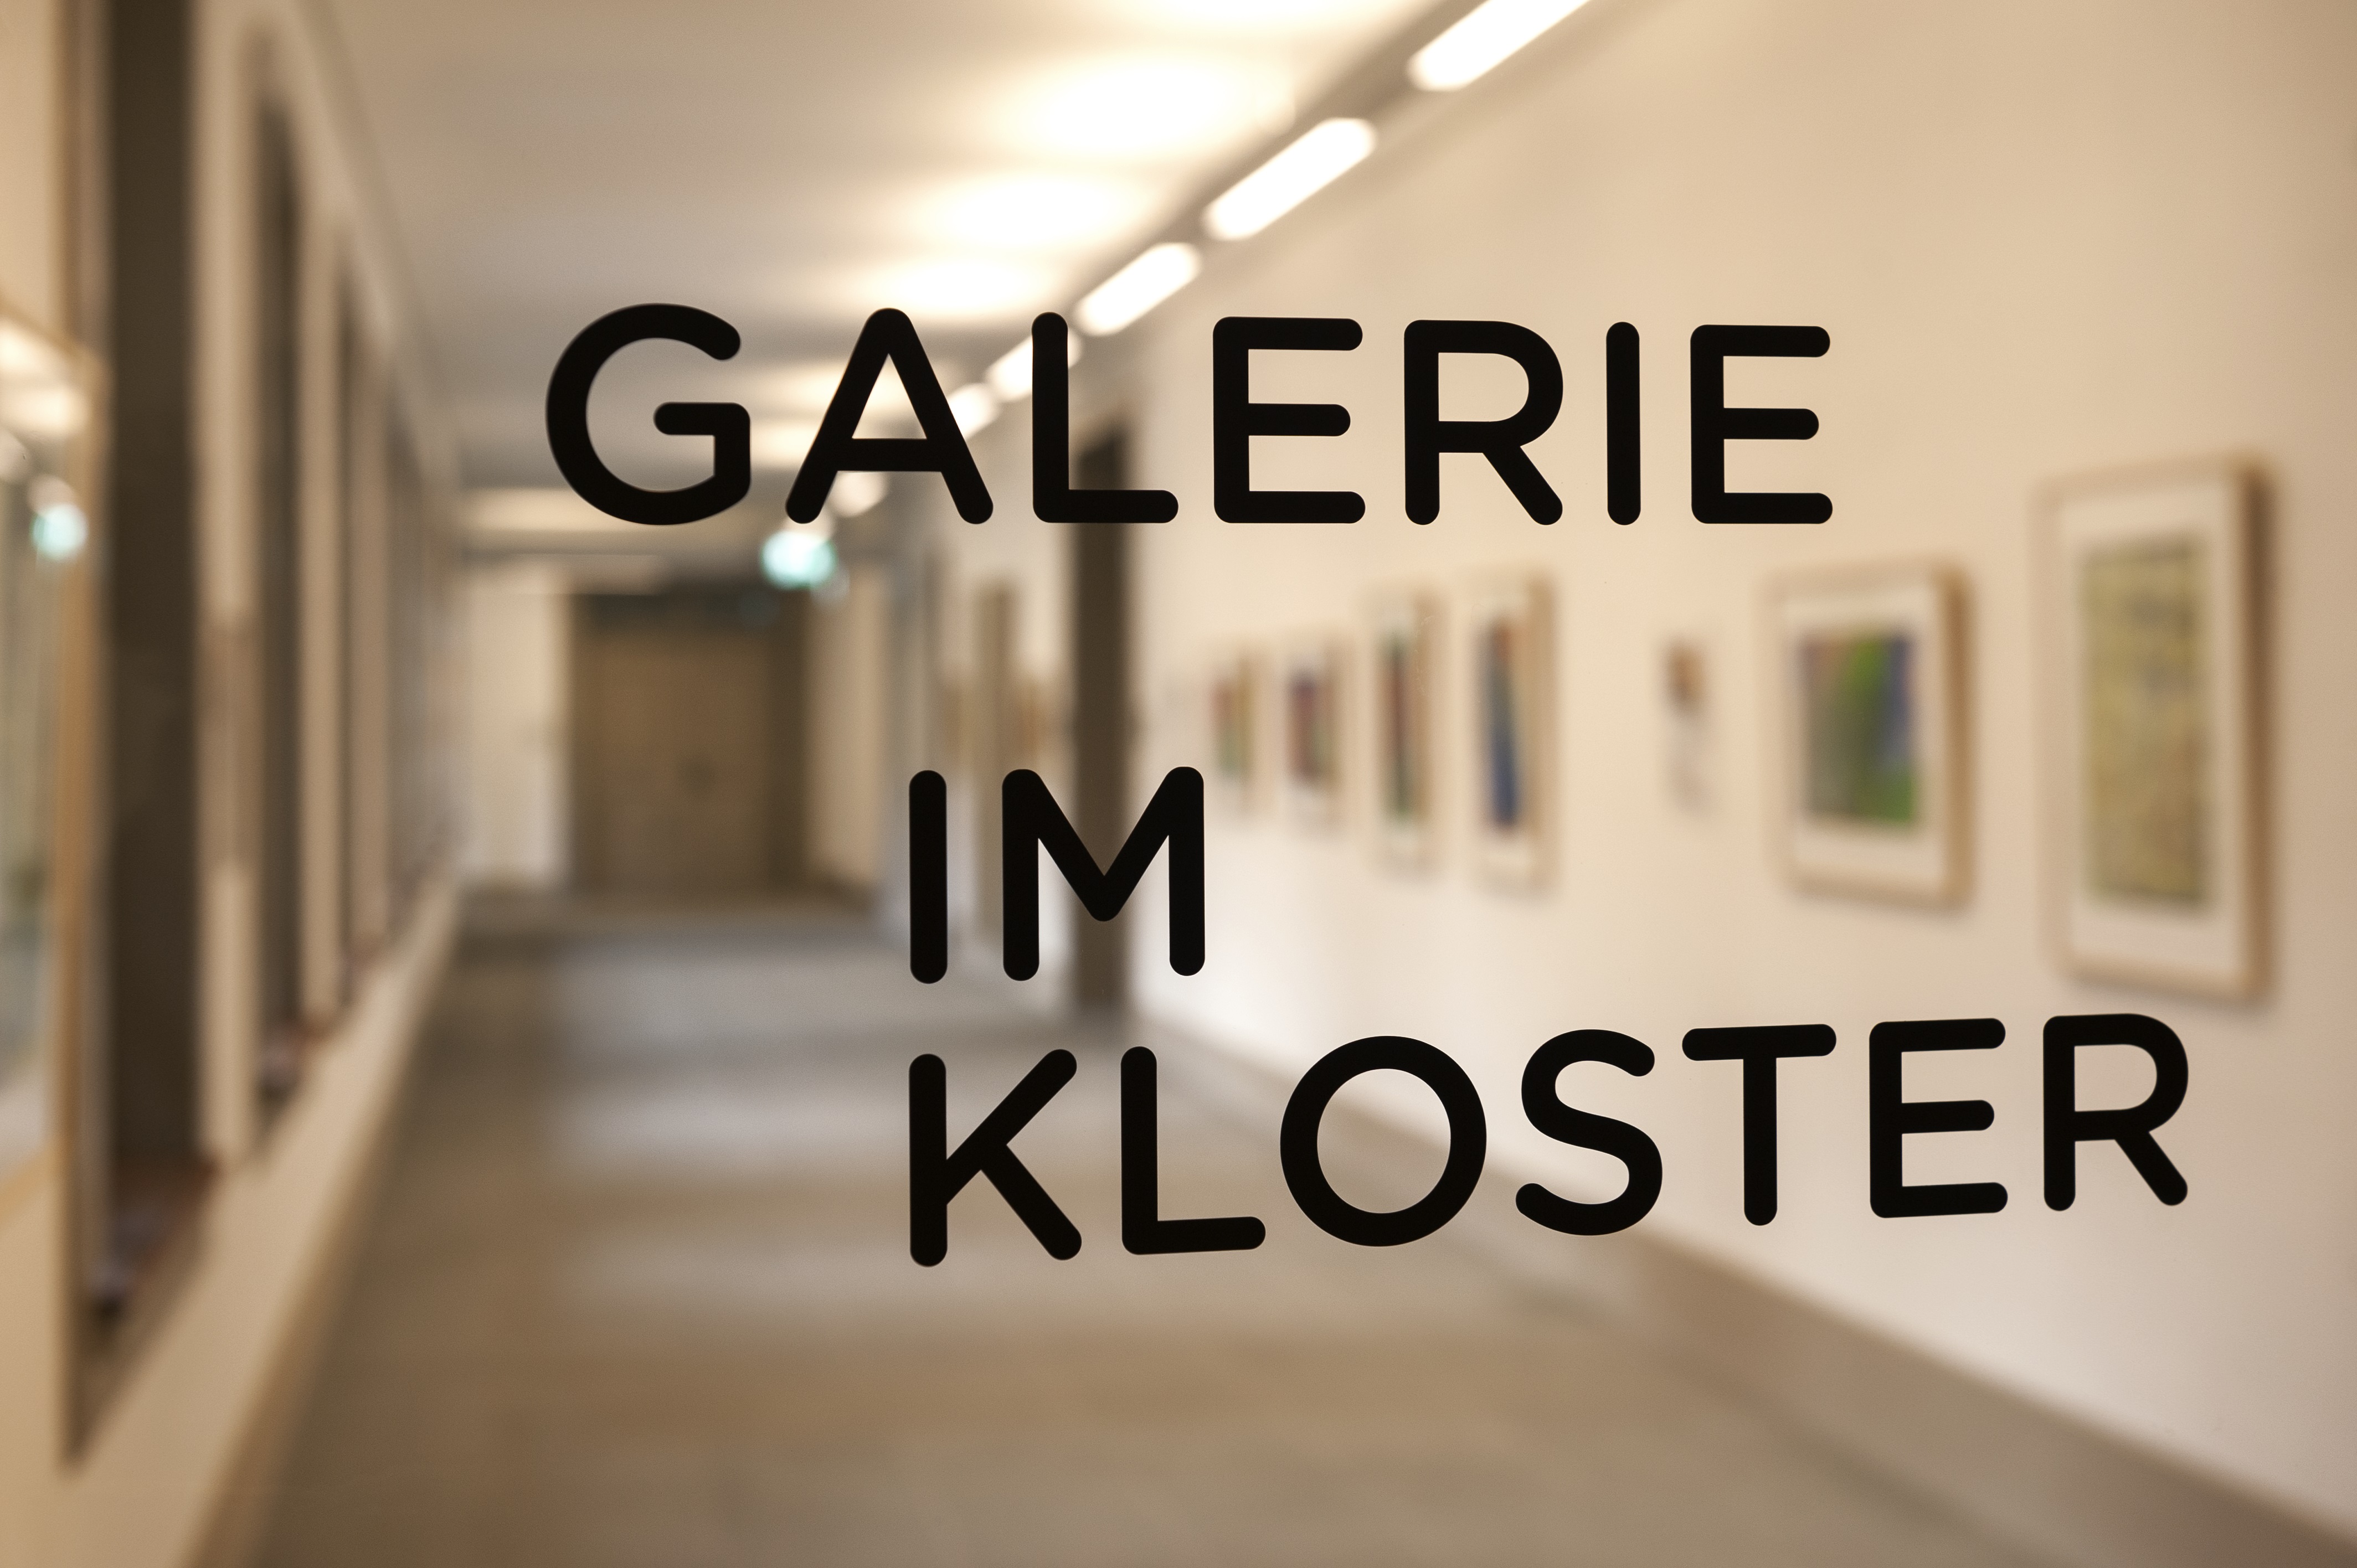 SSBL Galerie im Kloster, Eingangstüre | © copyright by jutta vogel